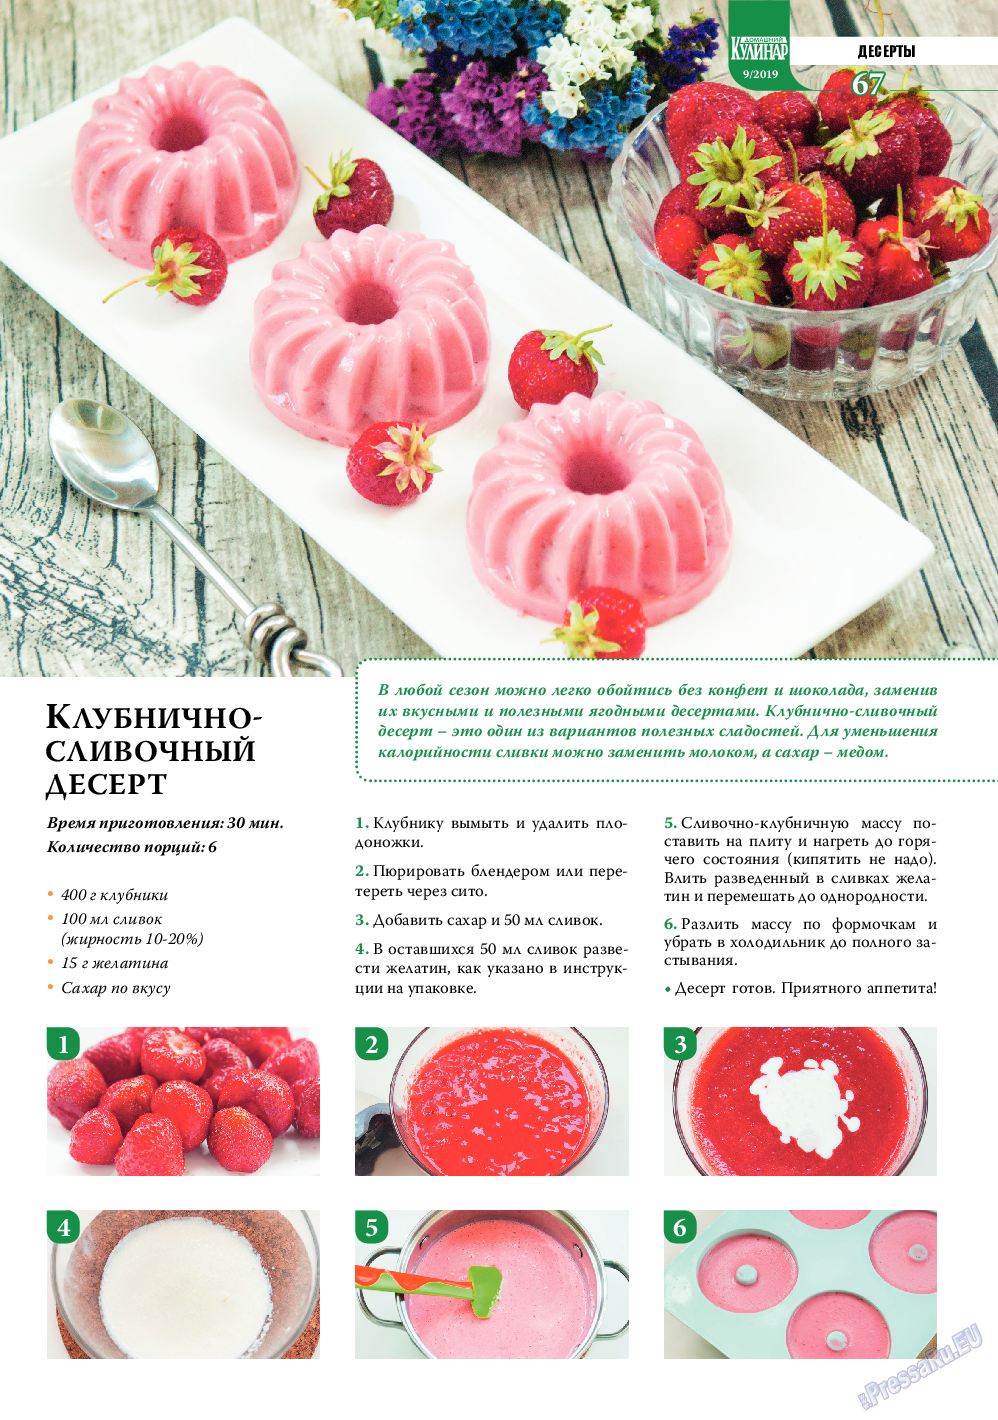 Домашний кулинар, журнал. 2019 №9 стр.67